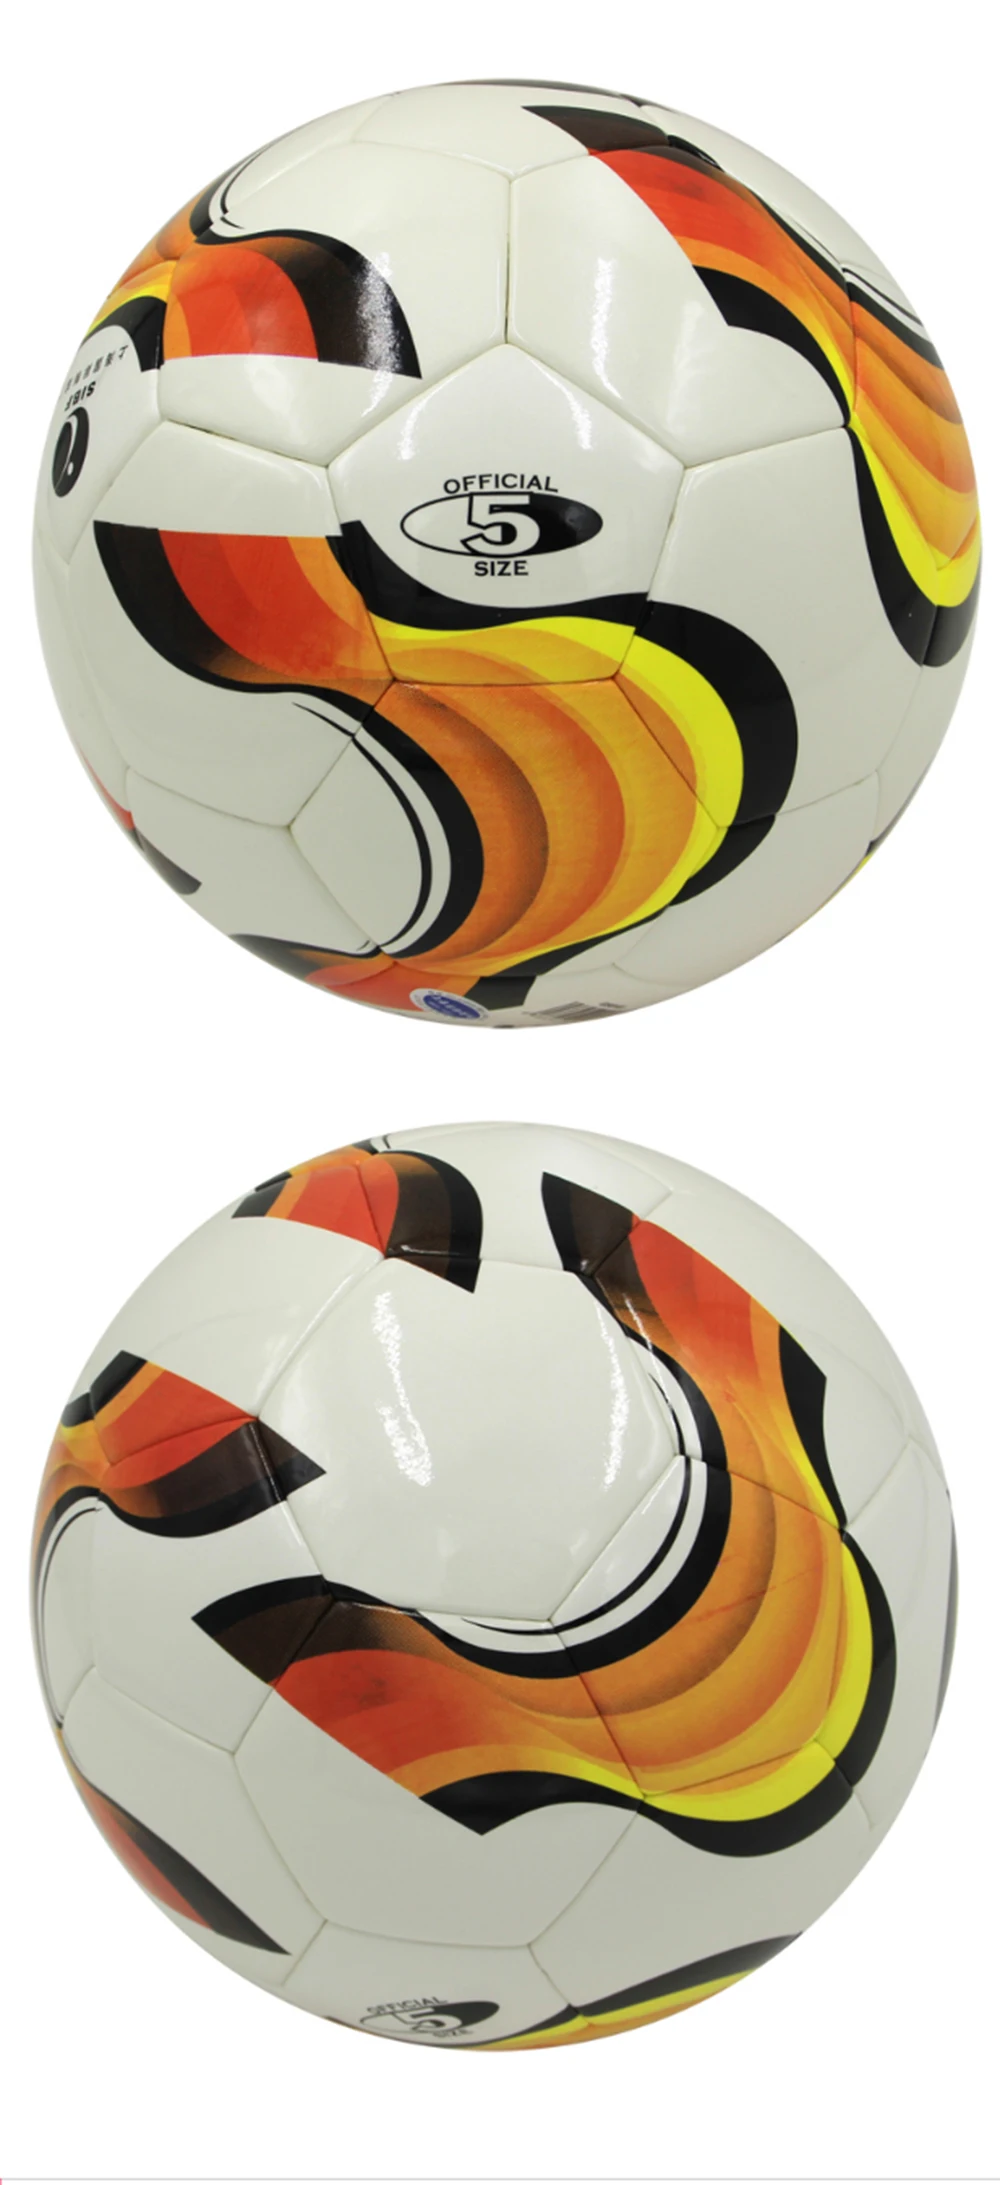 Поезд GS8103 высокое качество Стандартный Футбольный Мяч тренировочные мячи официальный размер 5 PU футбольный мяч